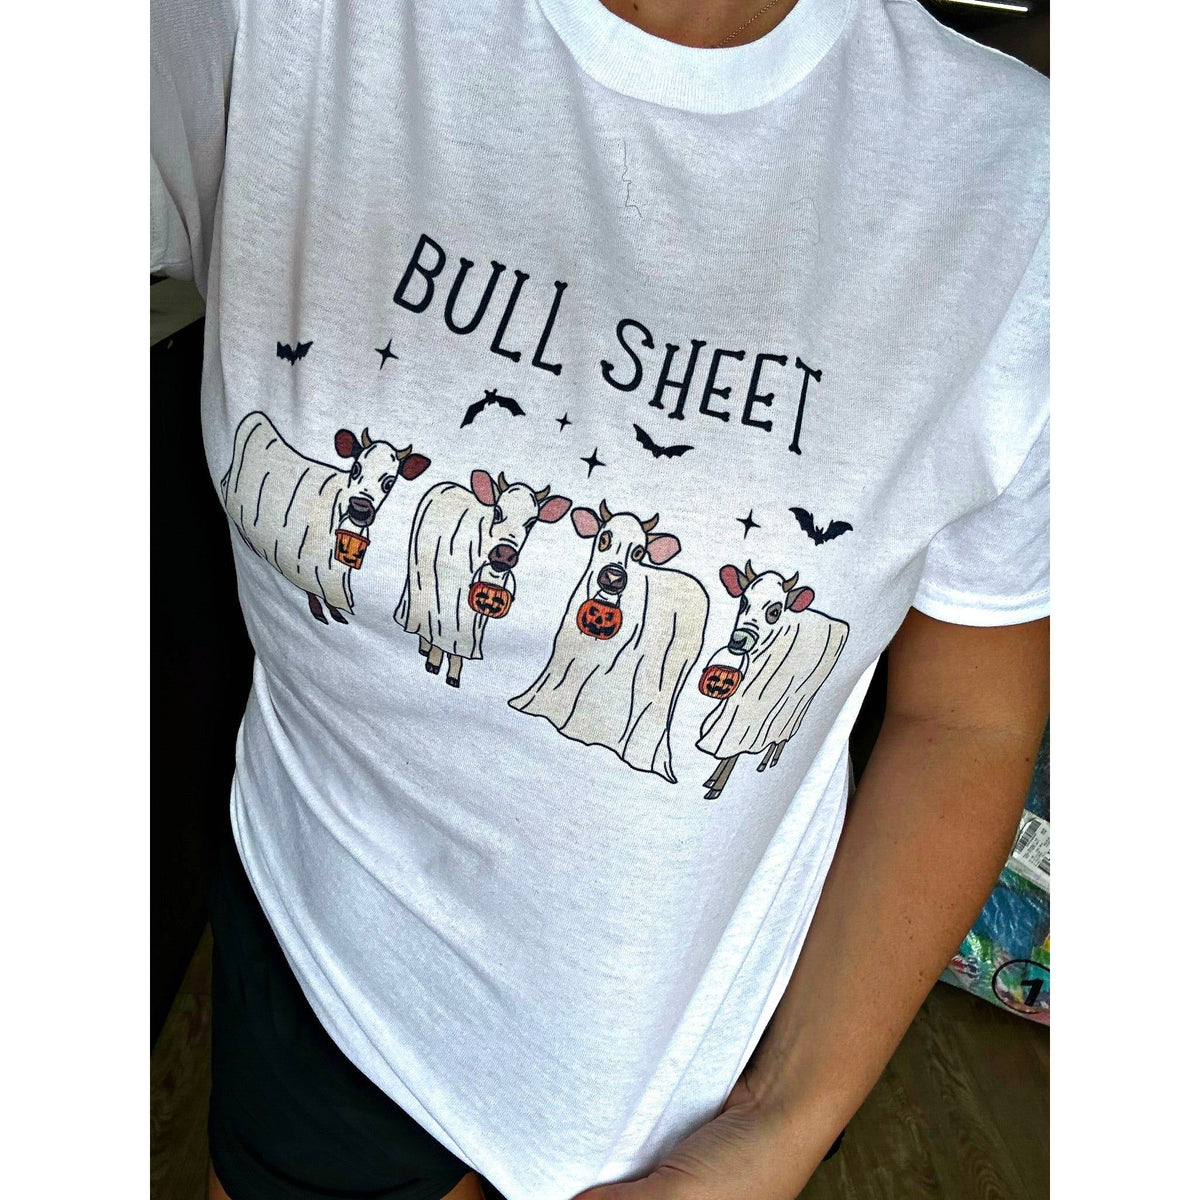 Bull Sheet tee or sweatshirt